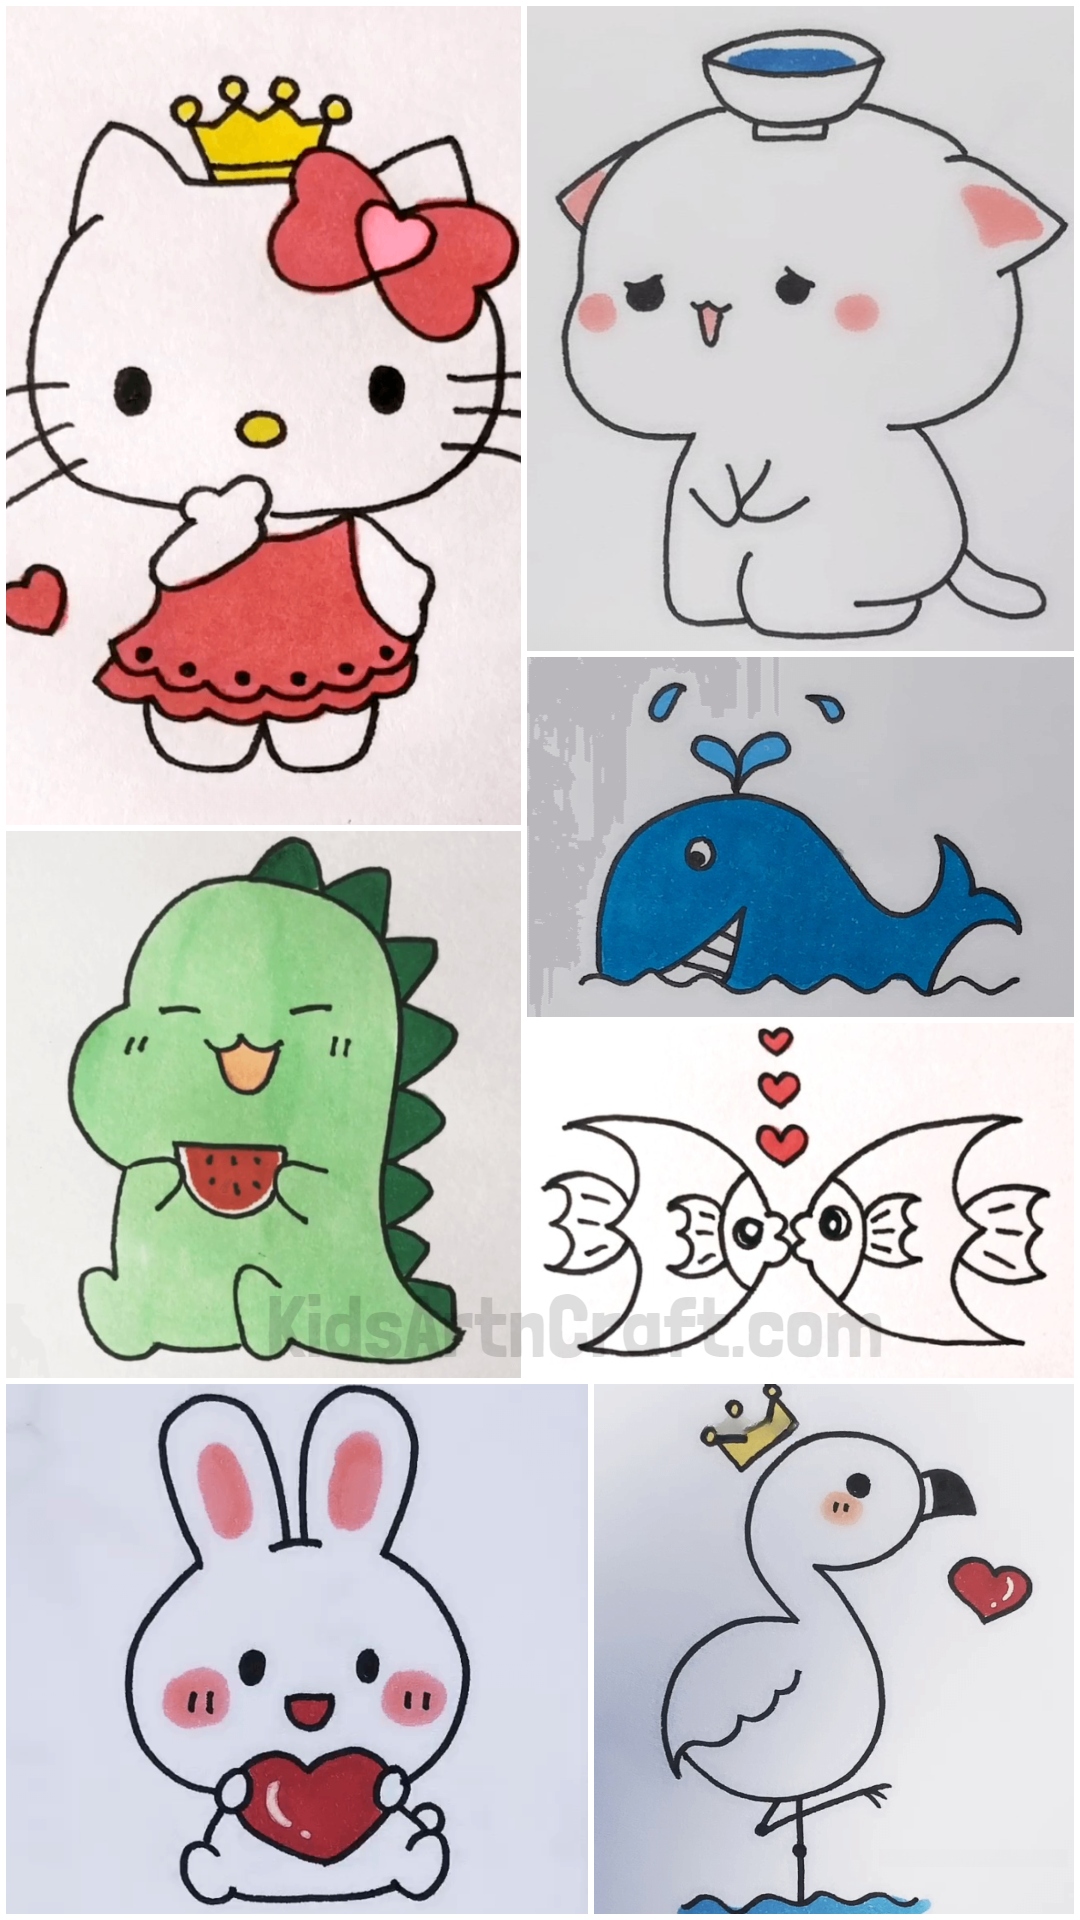 Cute & Easy Drawings For kids